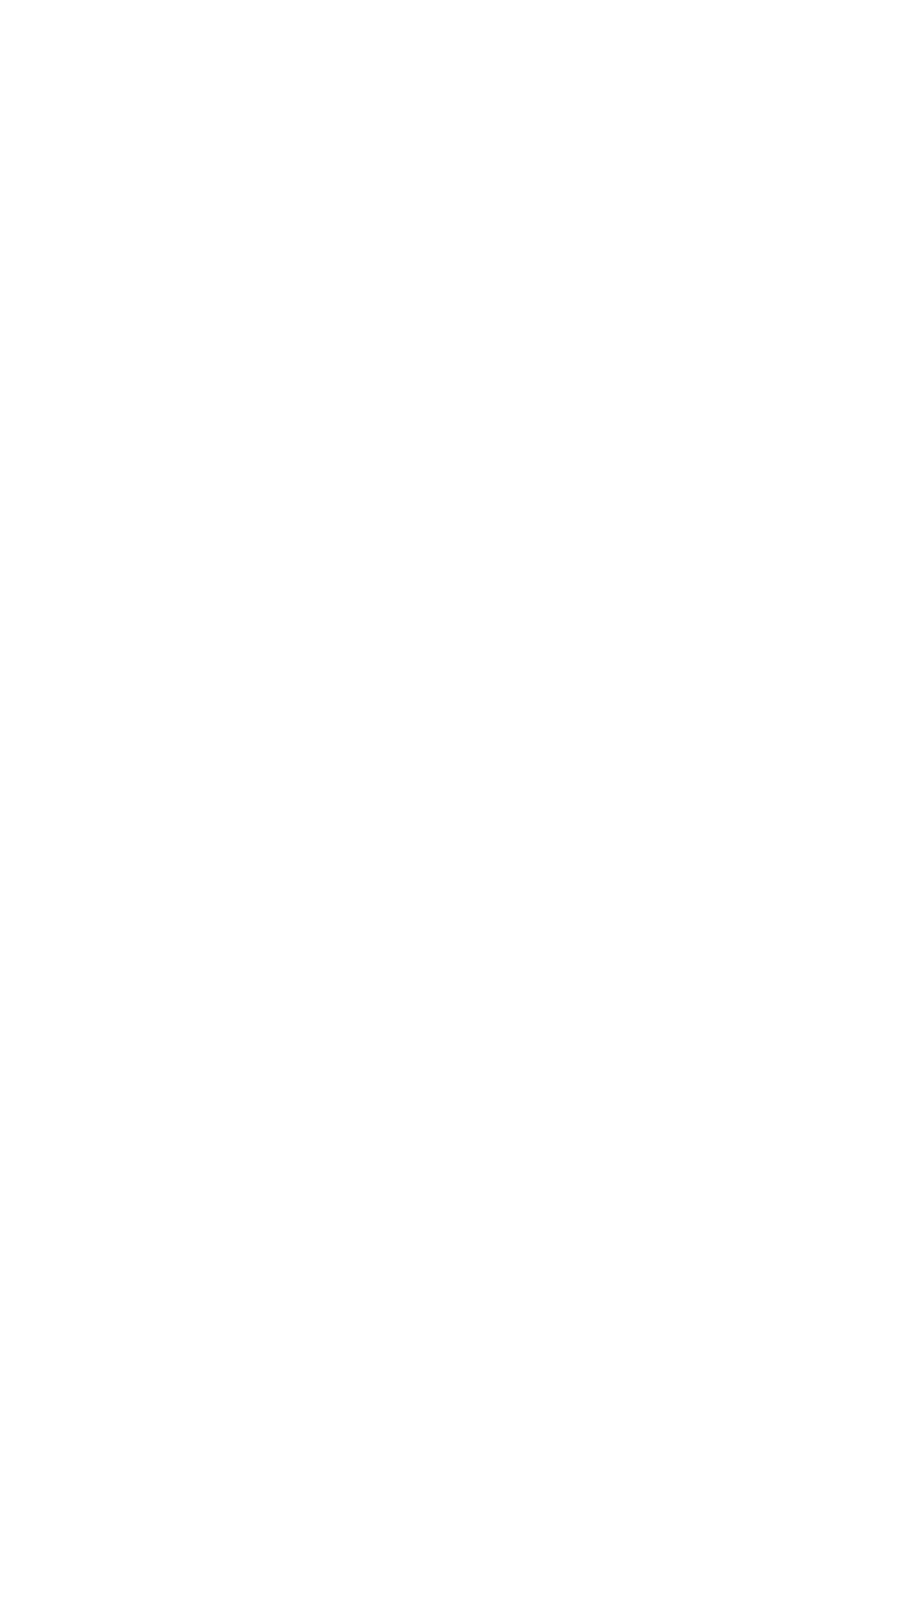 Dassault Aviation logo for dark backgrounds (transparent PNG)